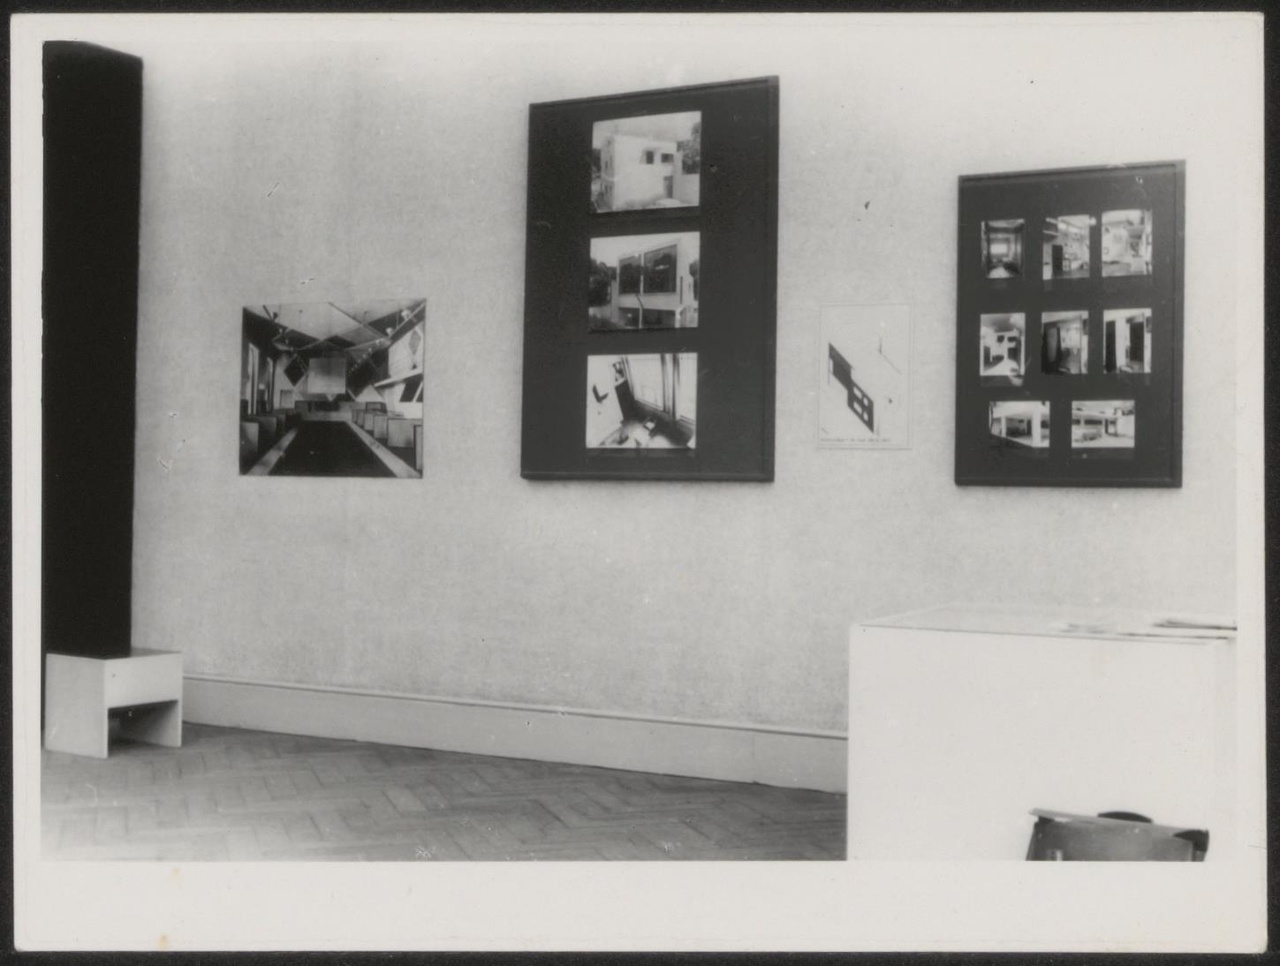 Afbeelding van tentoonstelling De Stijl SMA, 1951, zaal 4, witte wand met fotopanelen Van Doesburg